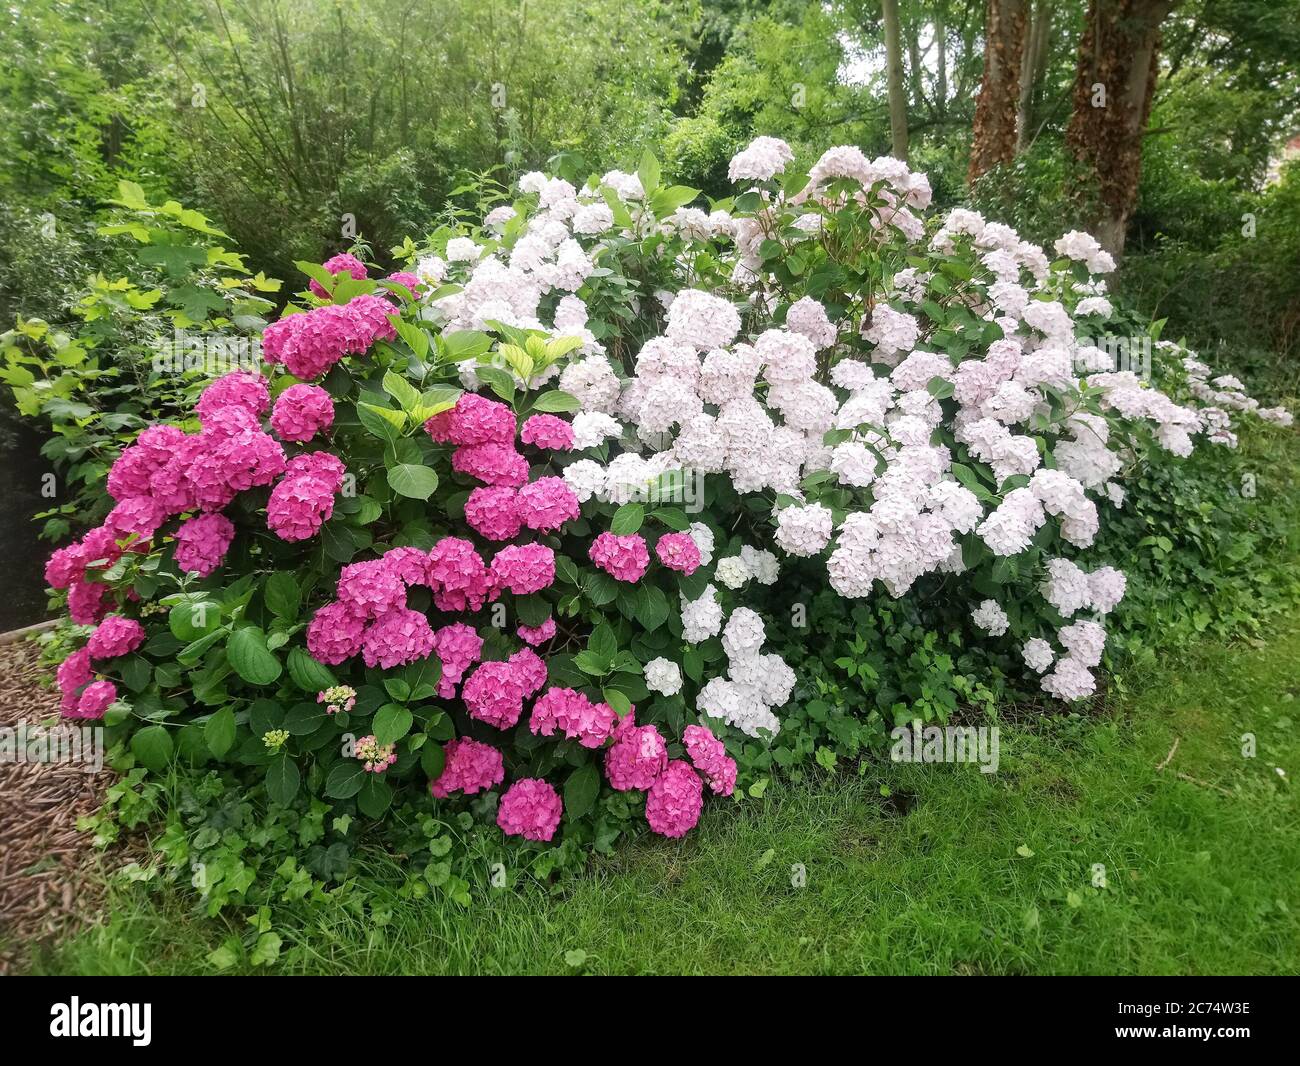 Bunte Hortensia oder Hortensia macrophylla Blumen in einem Garten Stockfoto